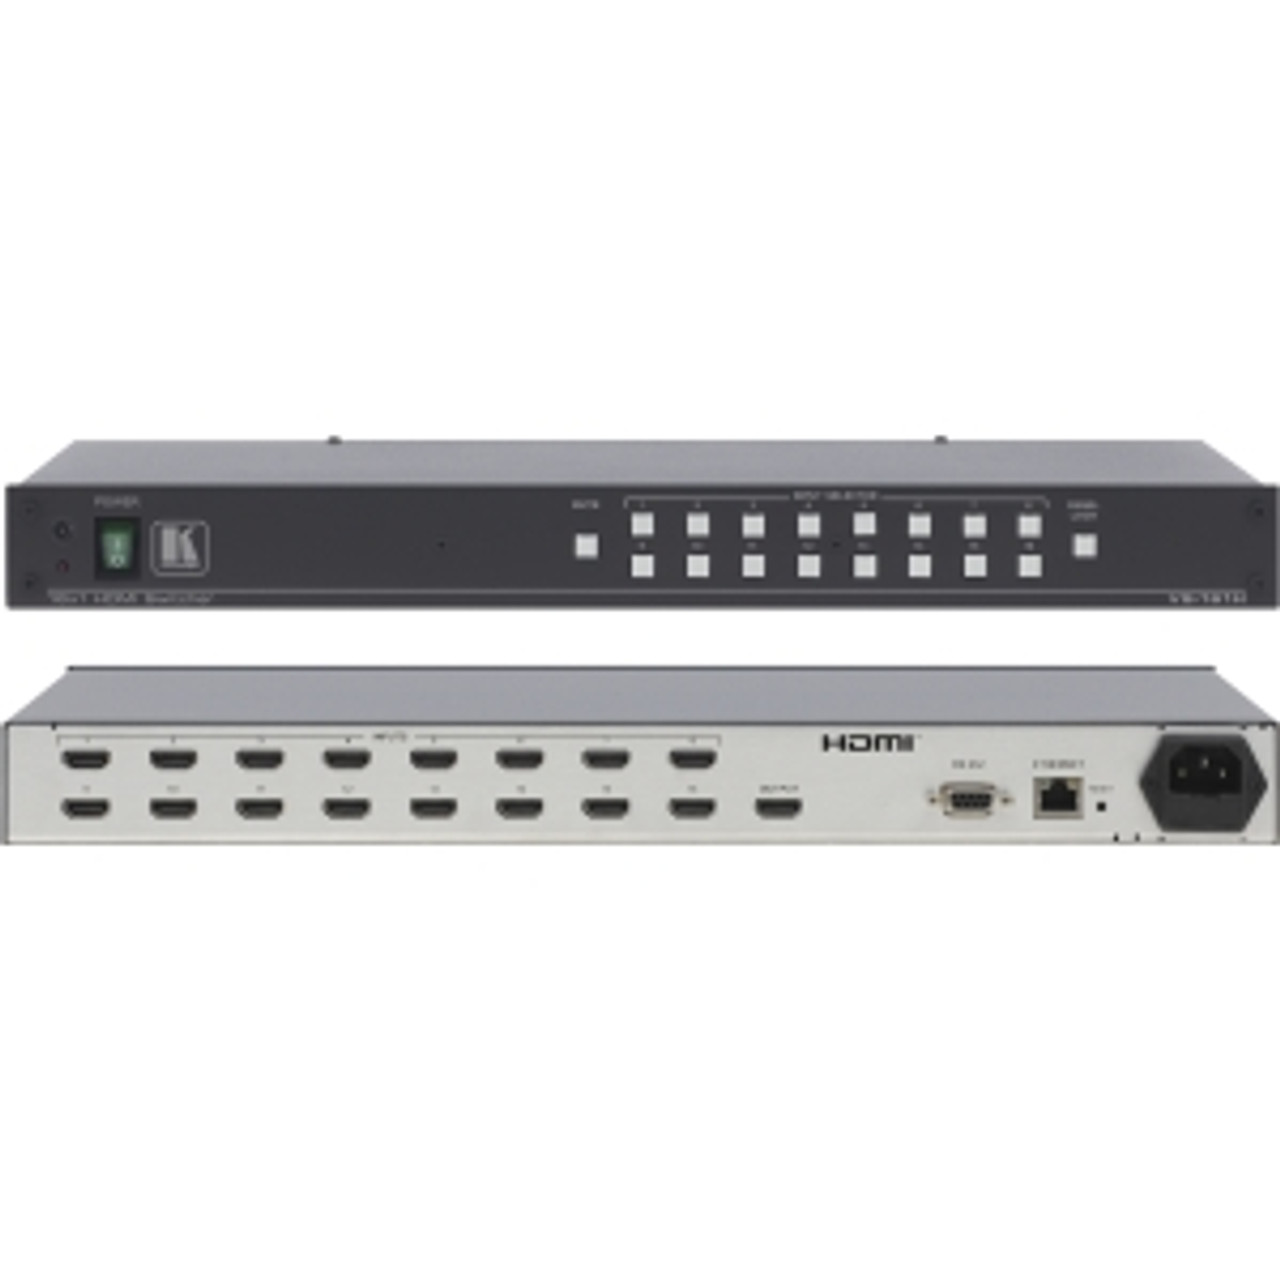 VS-161H Kramer VS-161H HDMI Switch 16 x HDMI Digital Audio/Video In, 1 x HDMI Digital Audio/Video Out, 1 x RJ-45 Network, 1Serial UXGA